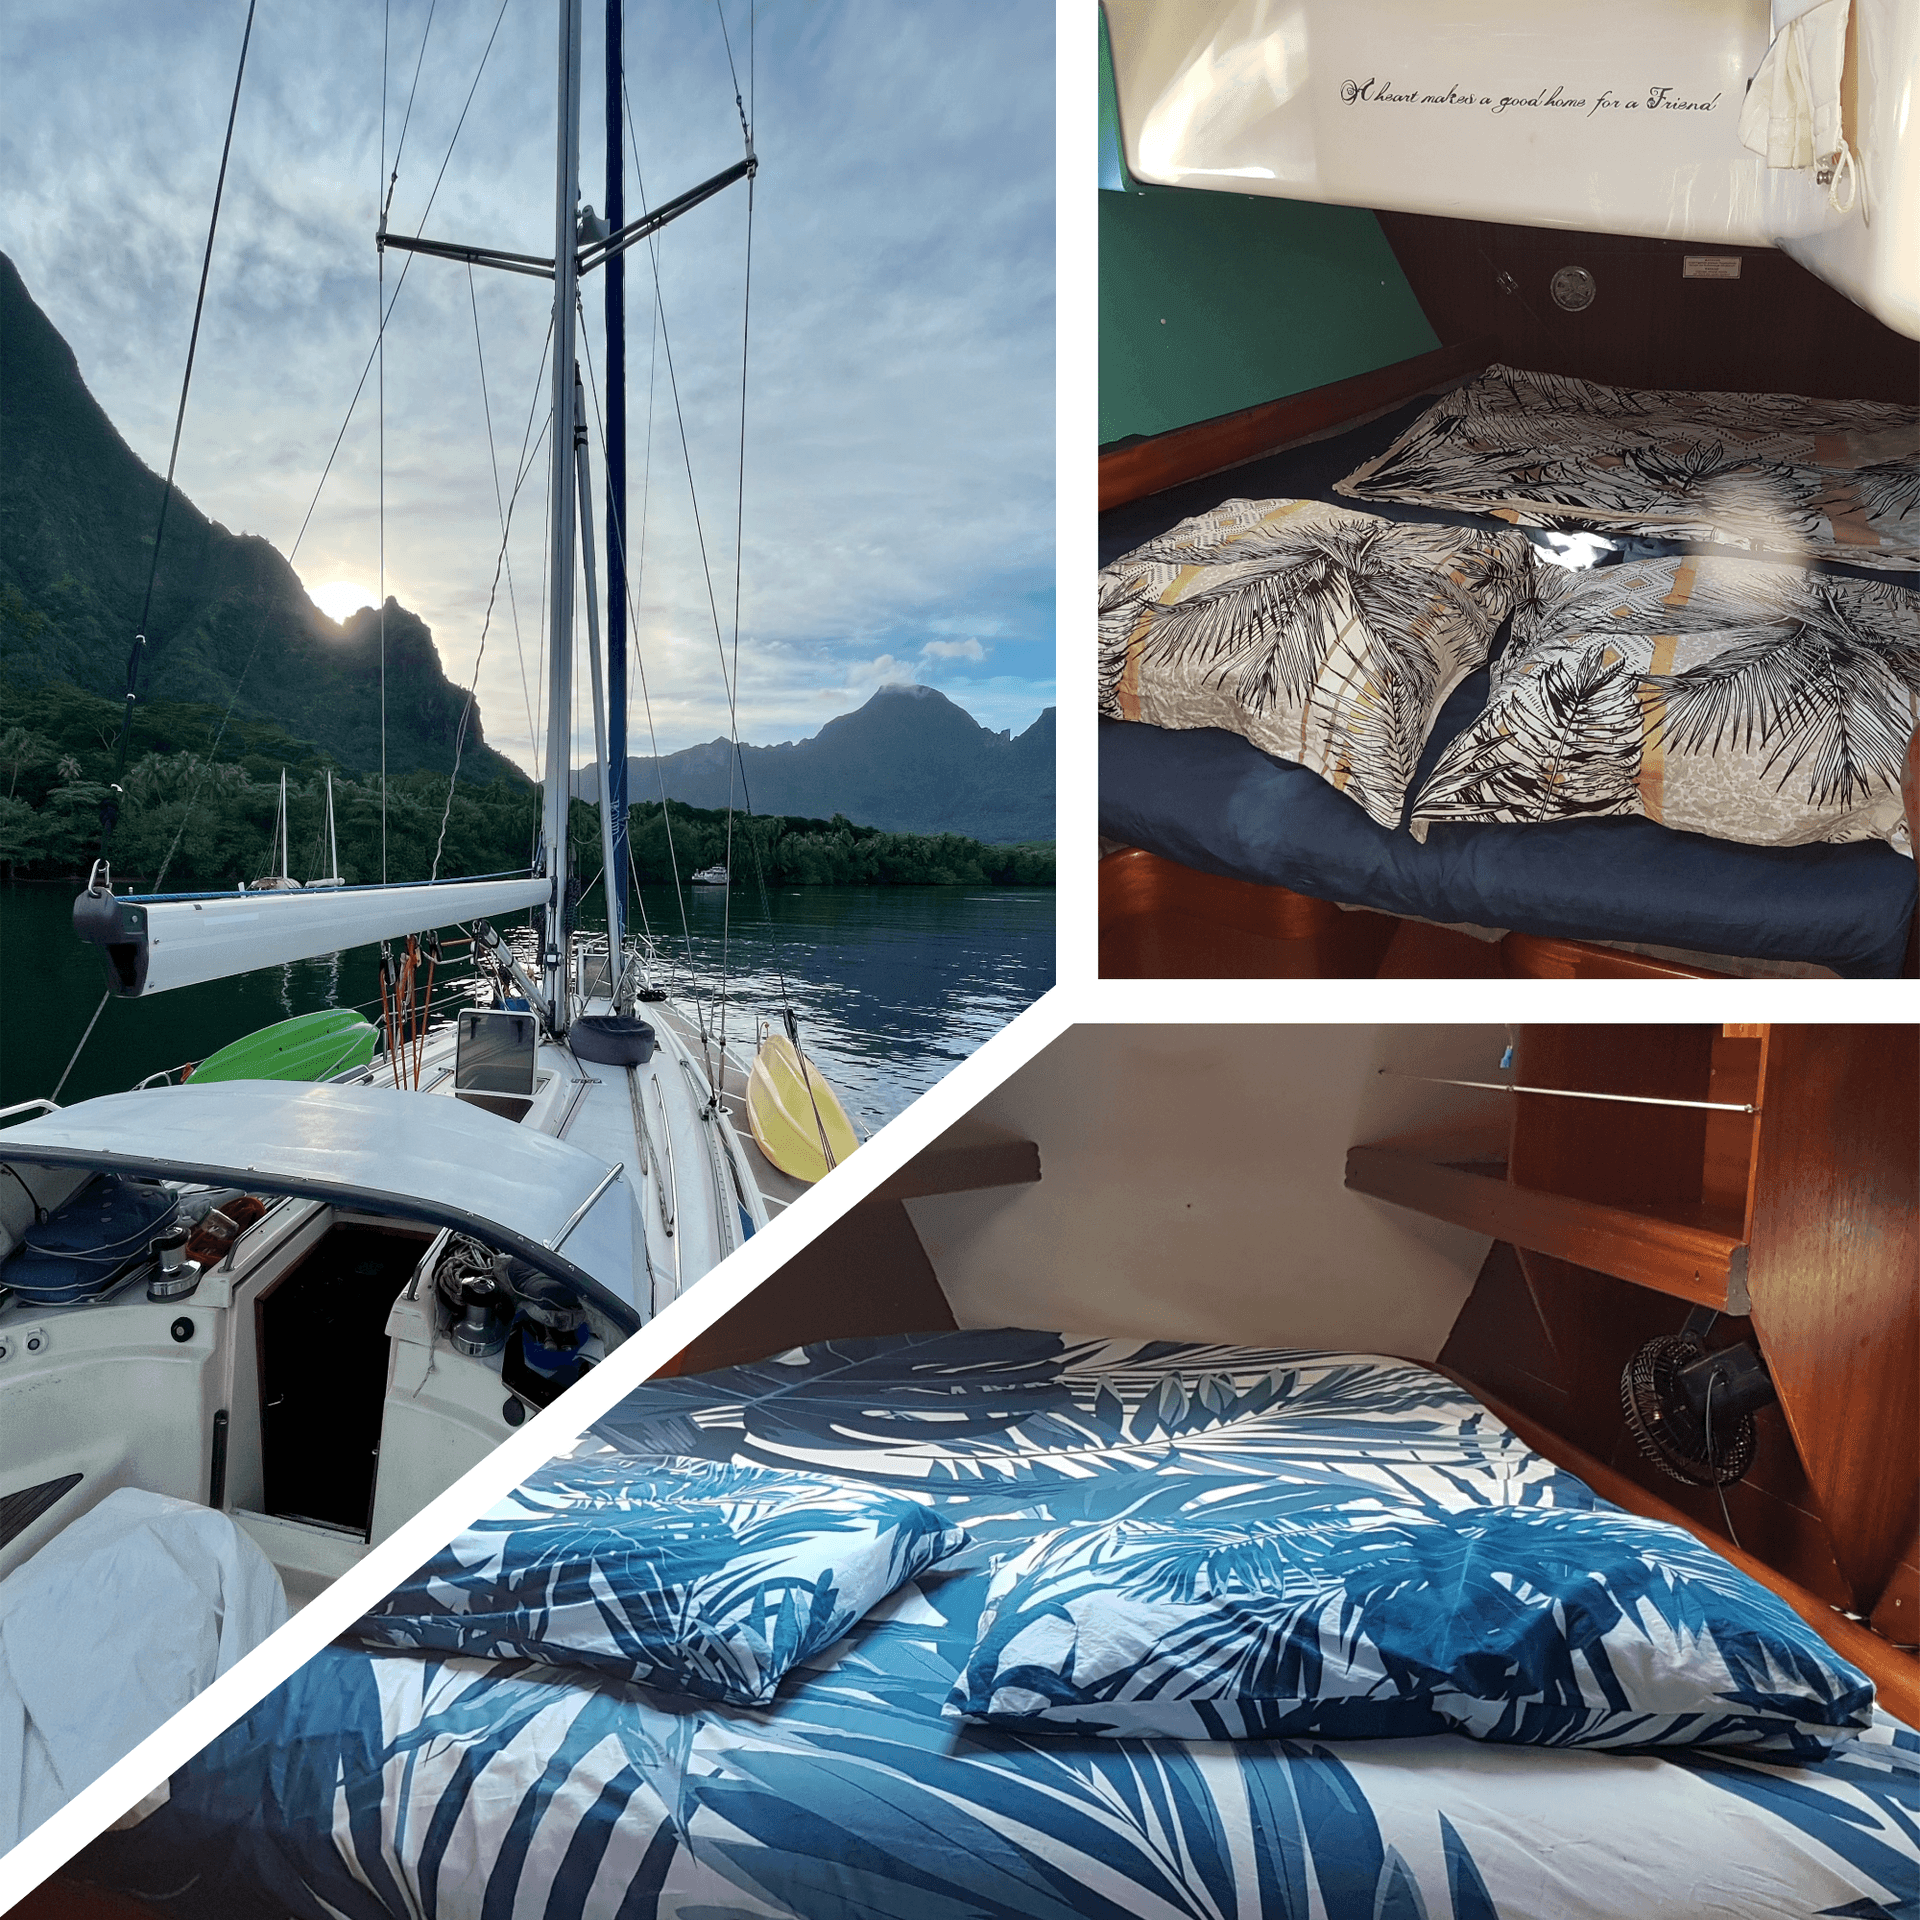 Dormir à bord comme de vrais marins - découvrir la vie de plaisancier